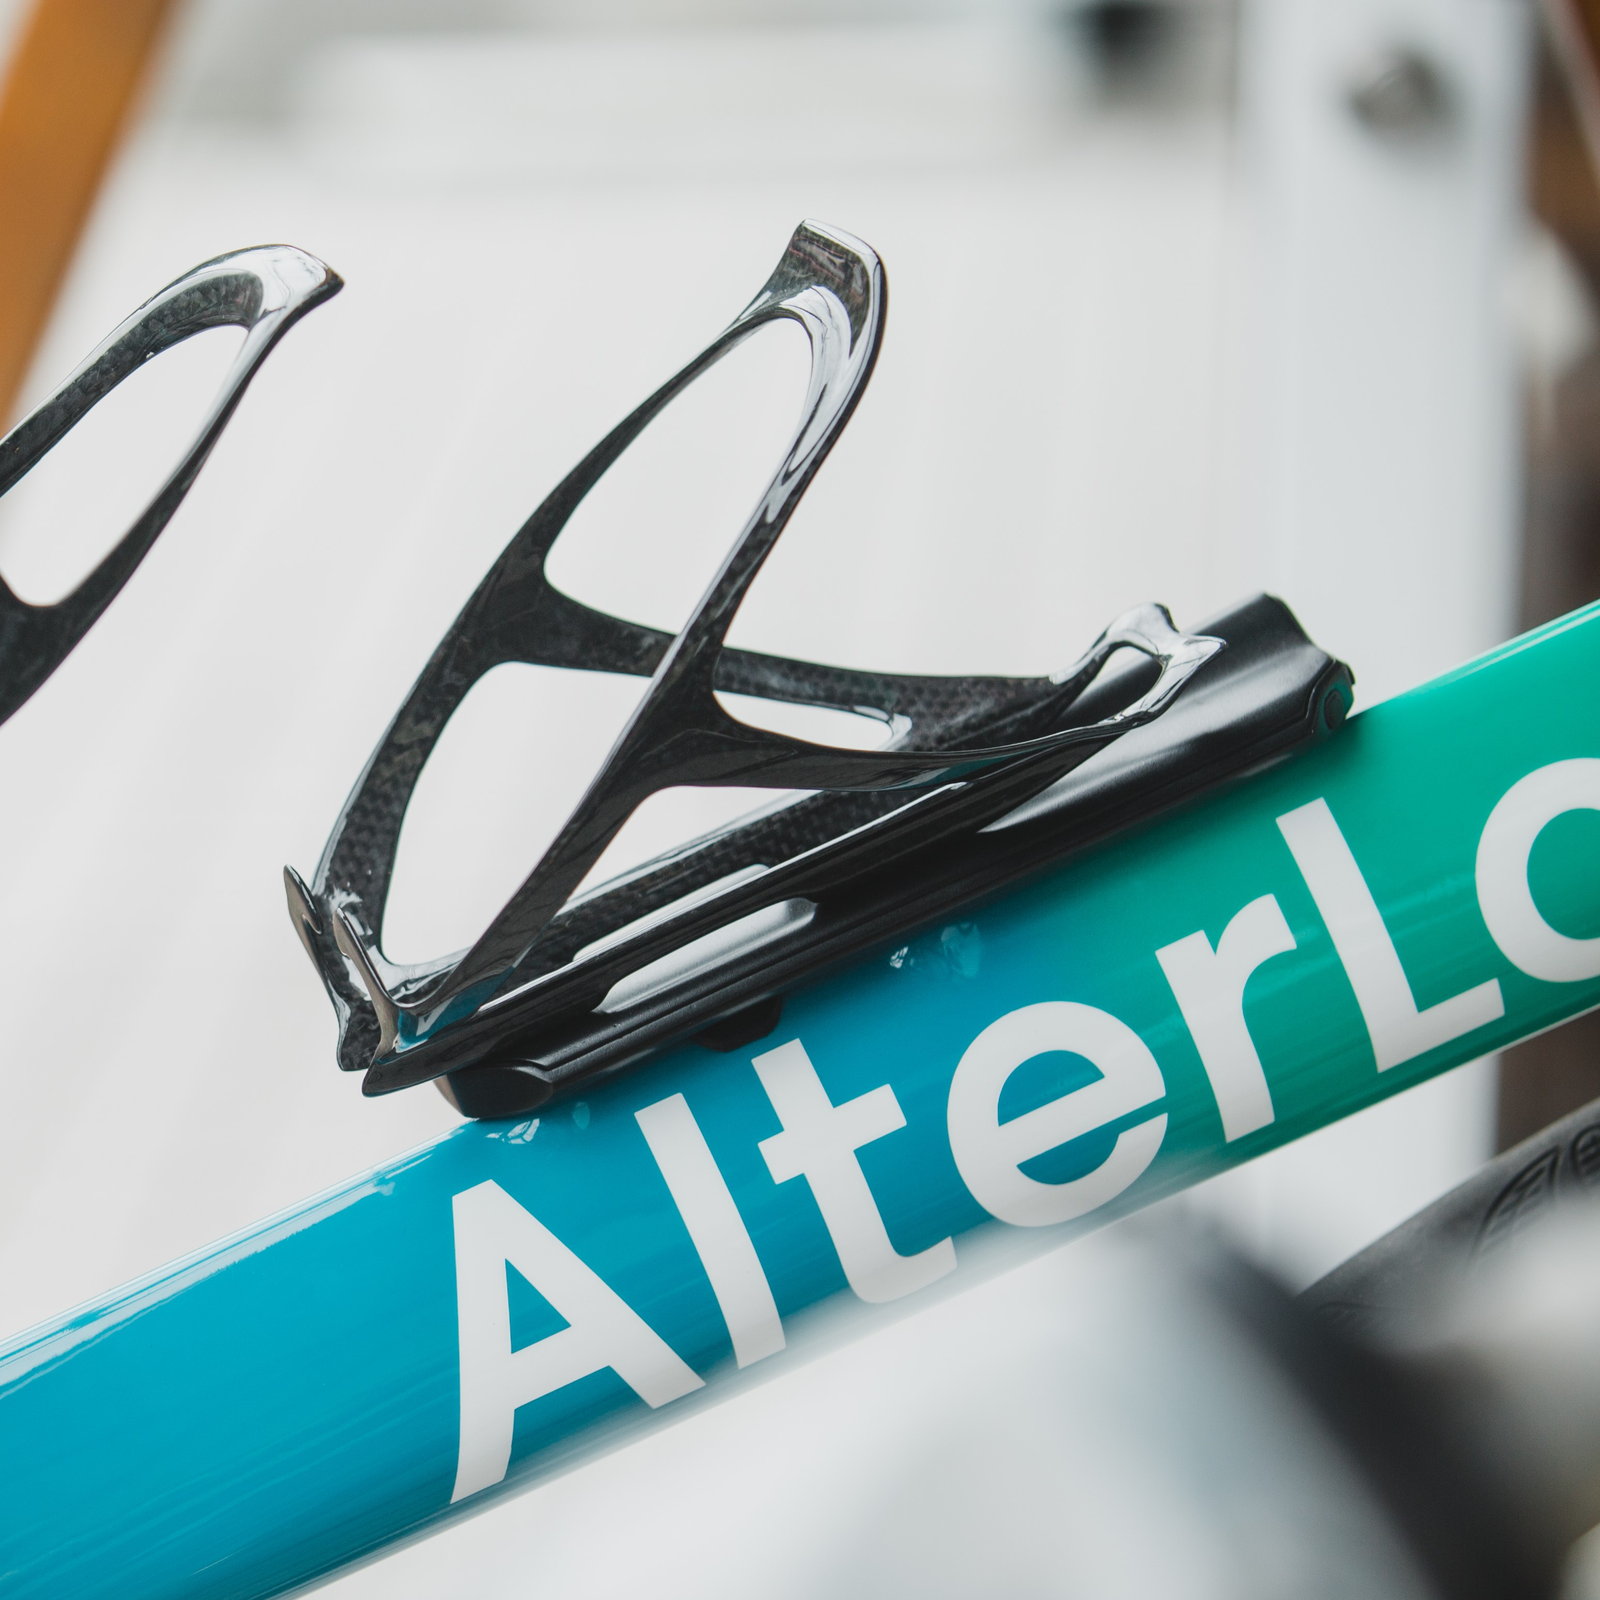 自転車盗難防止デバイス「AlterLock」第2世代が登場 予約販売を開始 